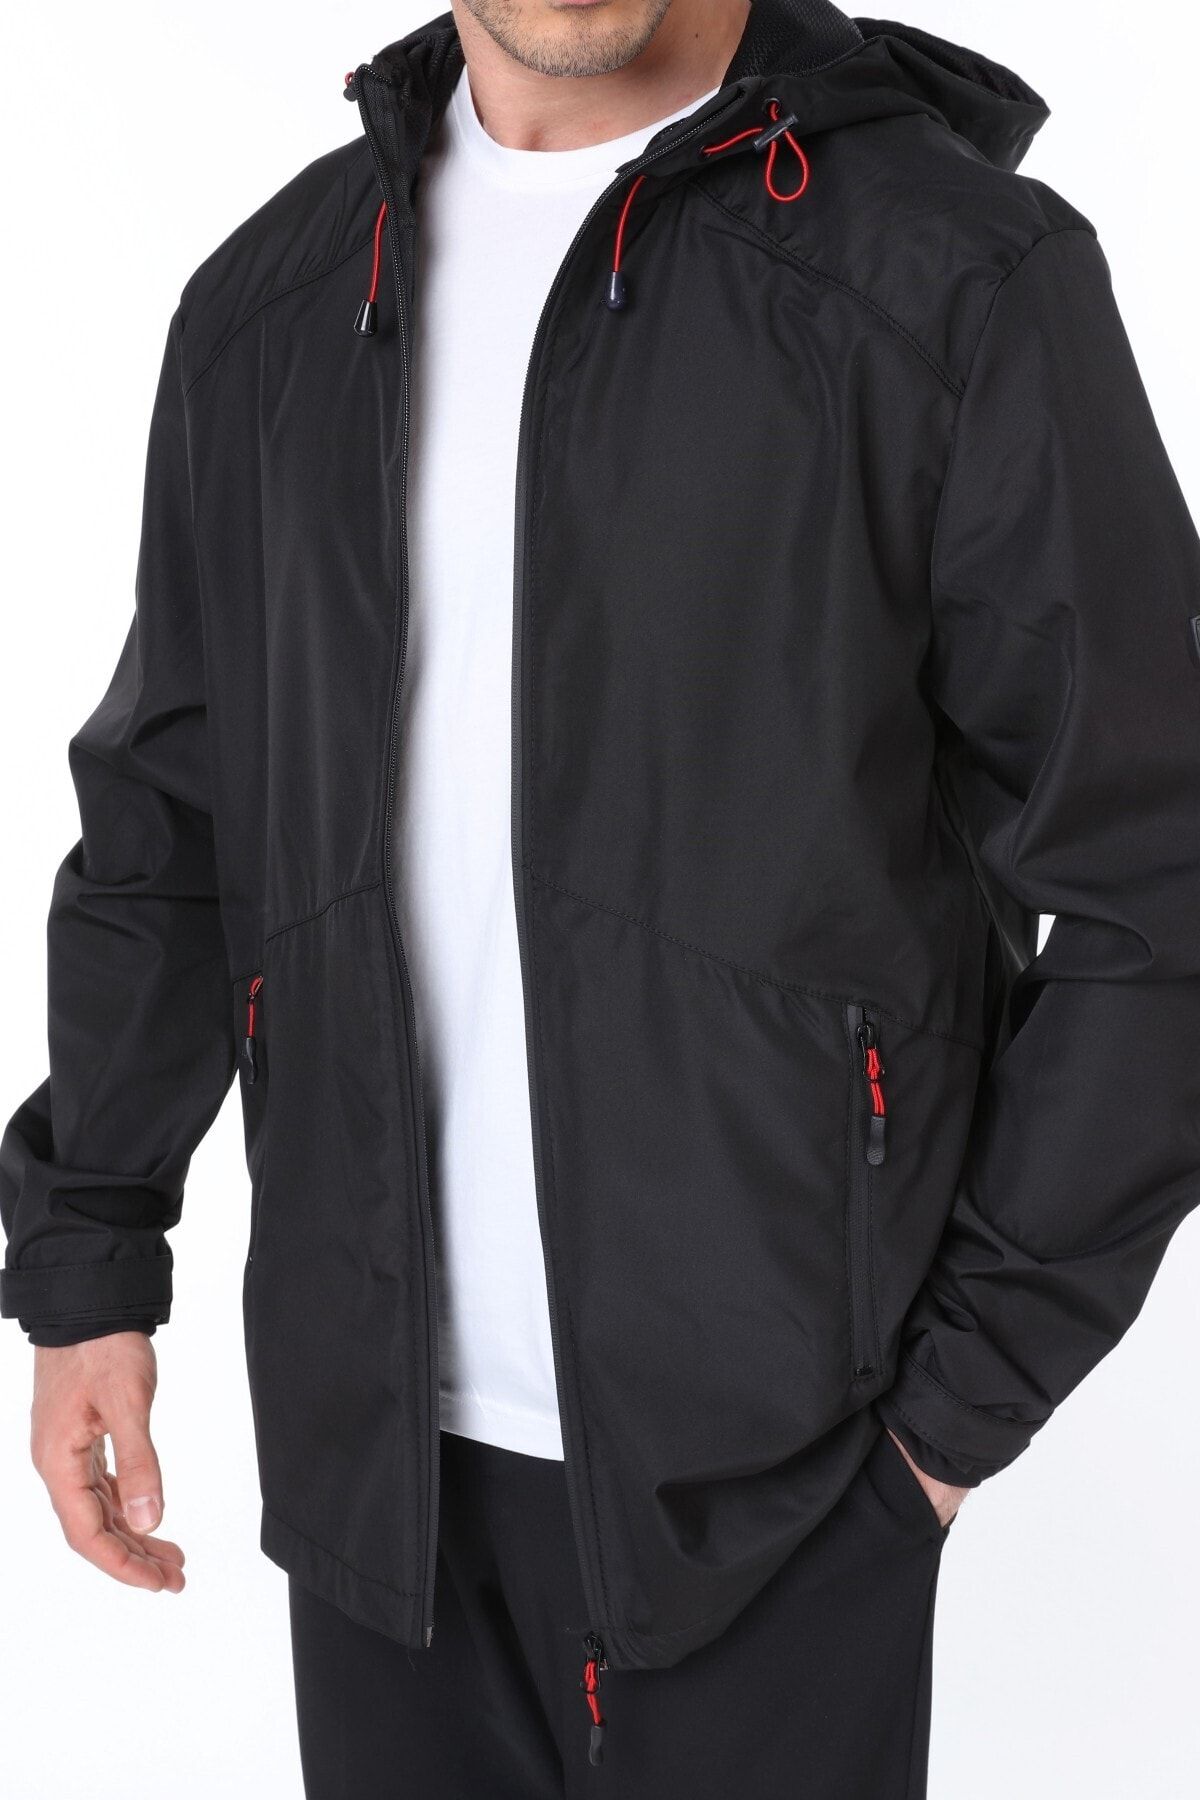 Ghassy Co Erkek Rüzgarlık/yağmurluk Outdoor Omuz Detay Mevsimlik Siyah Spor Ceket